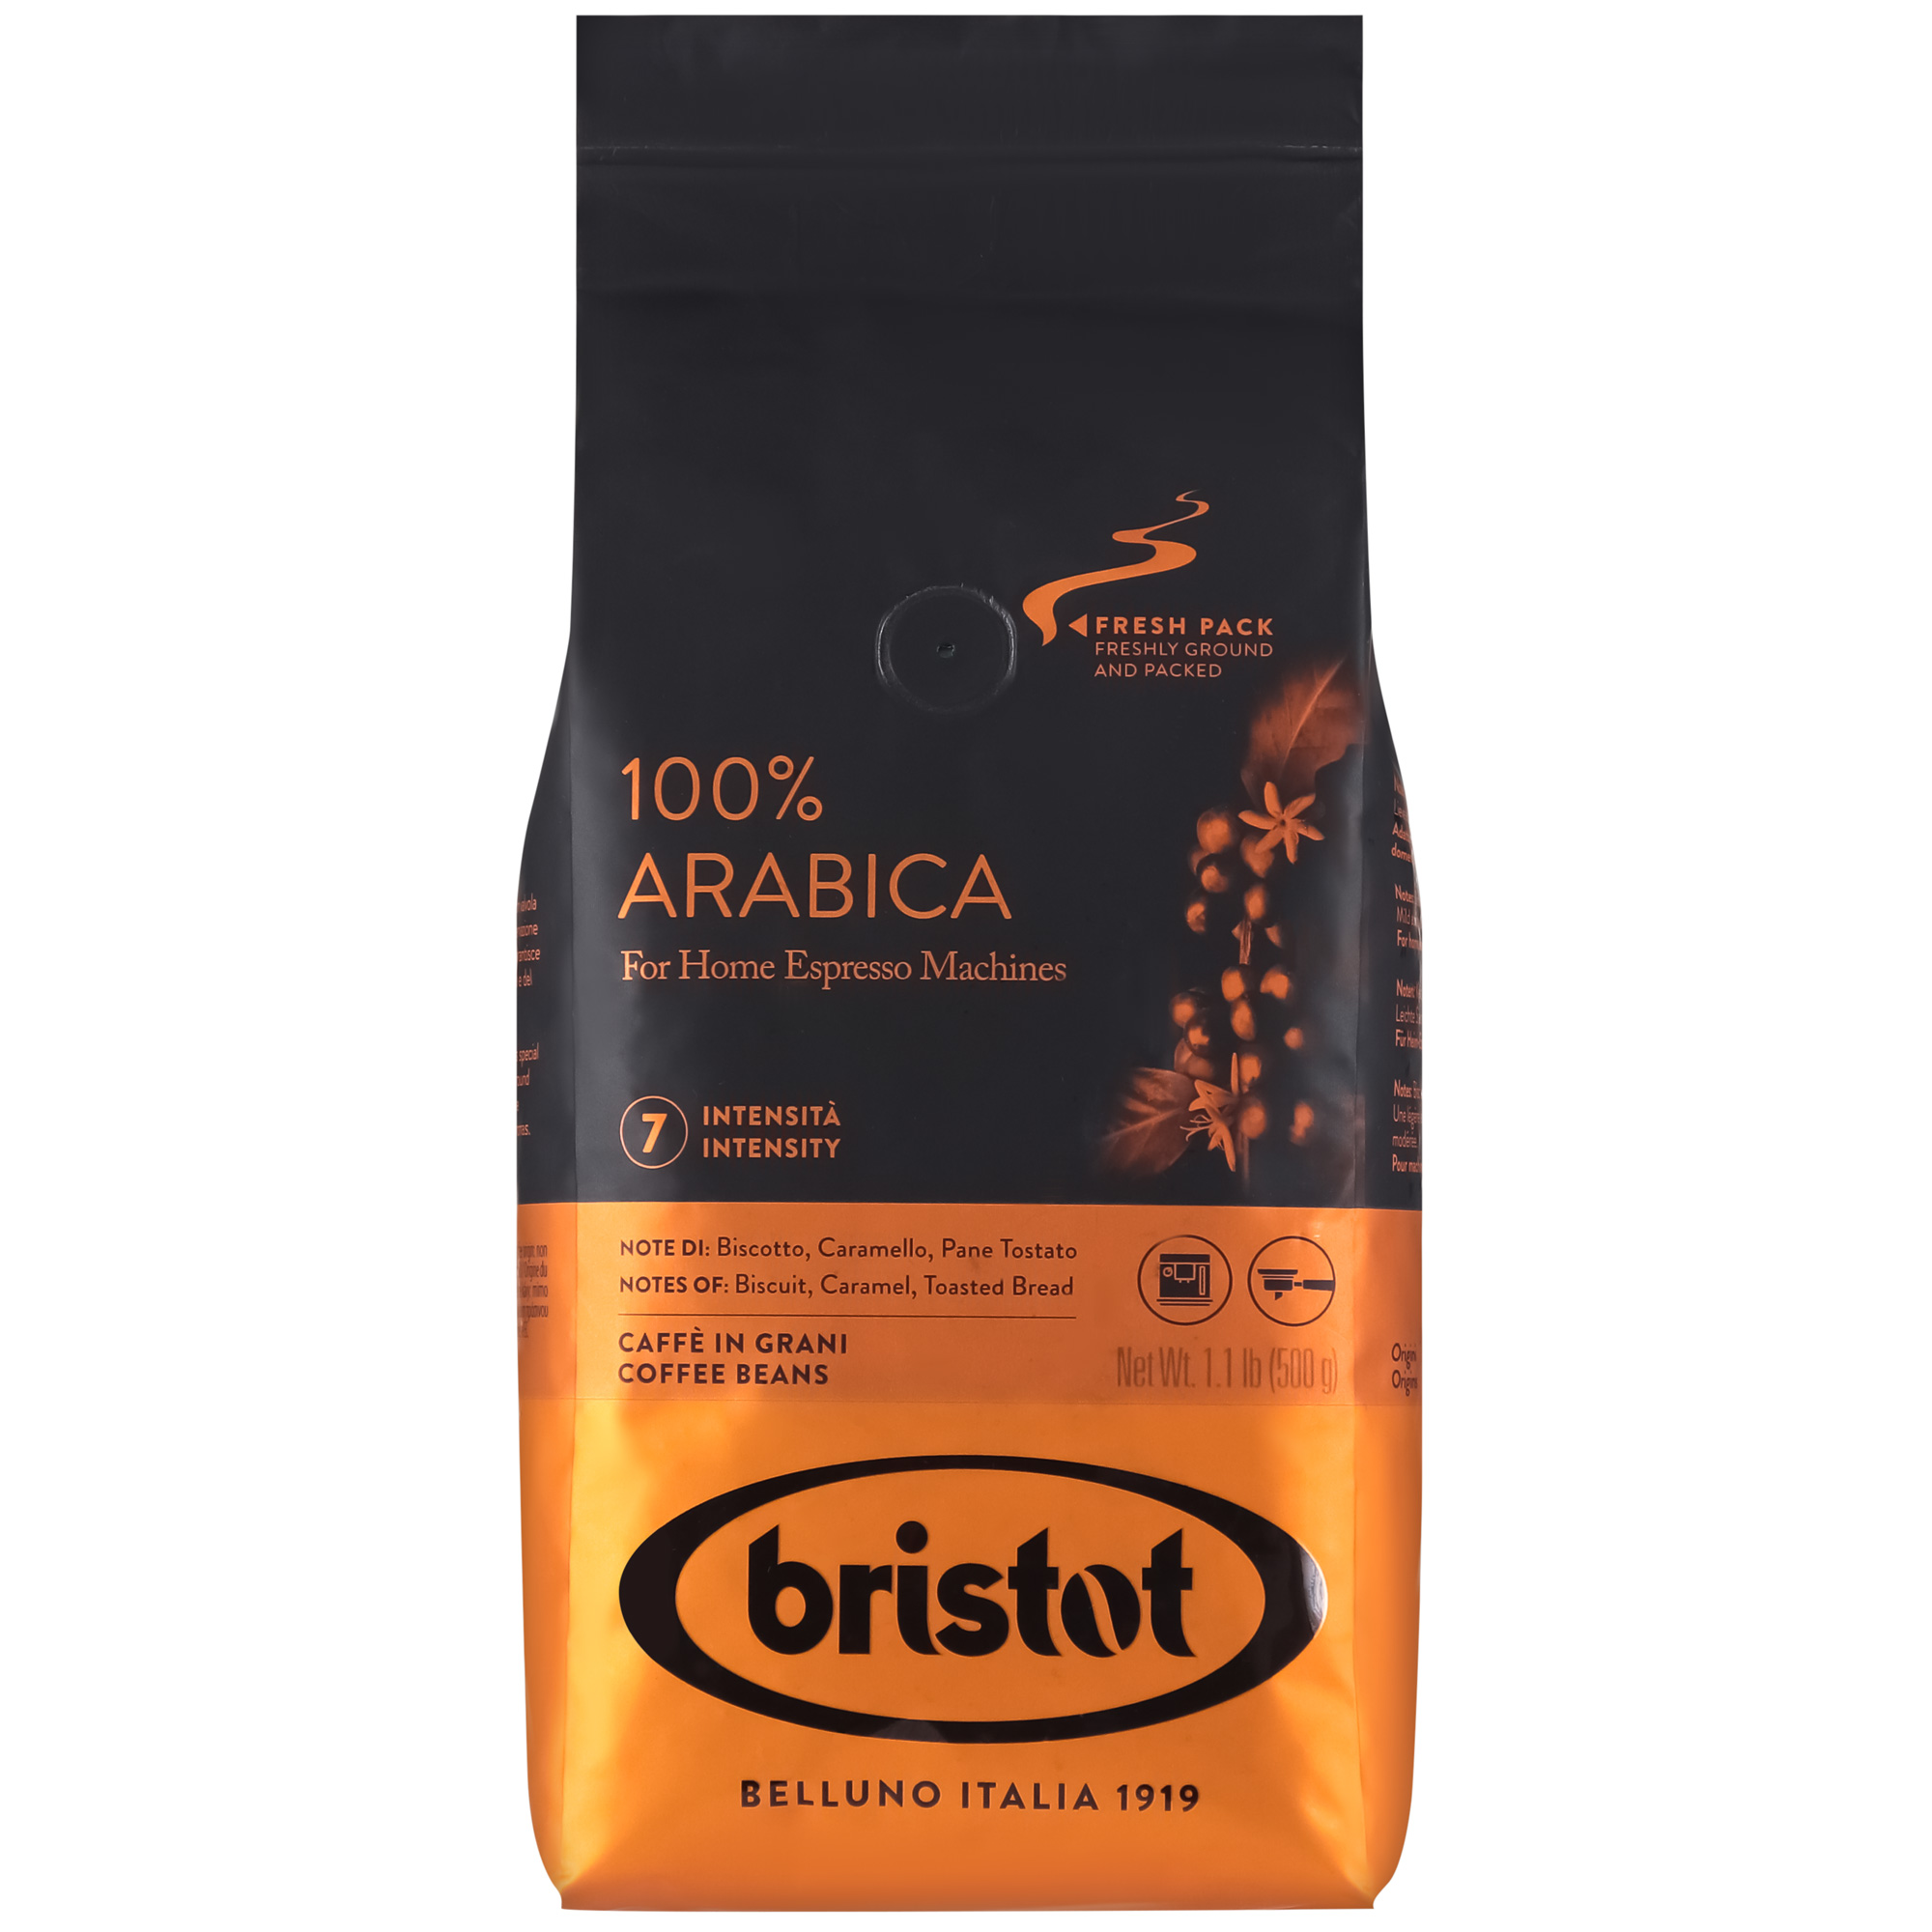 Кофе в зернах Bristot Arabica 100% , 500 г кофе в зернах caffe carraro arabica 100% 500 г